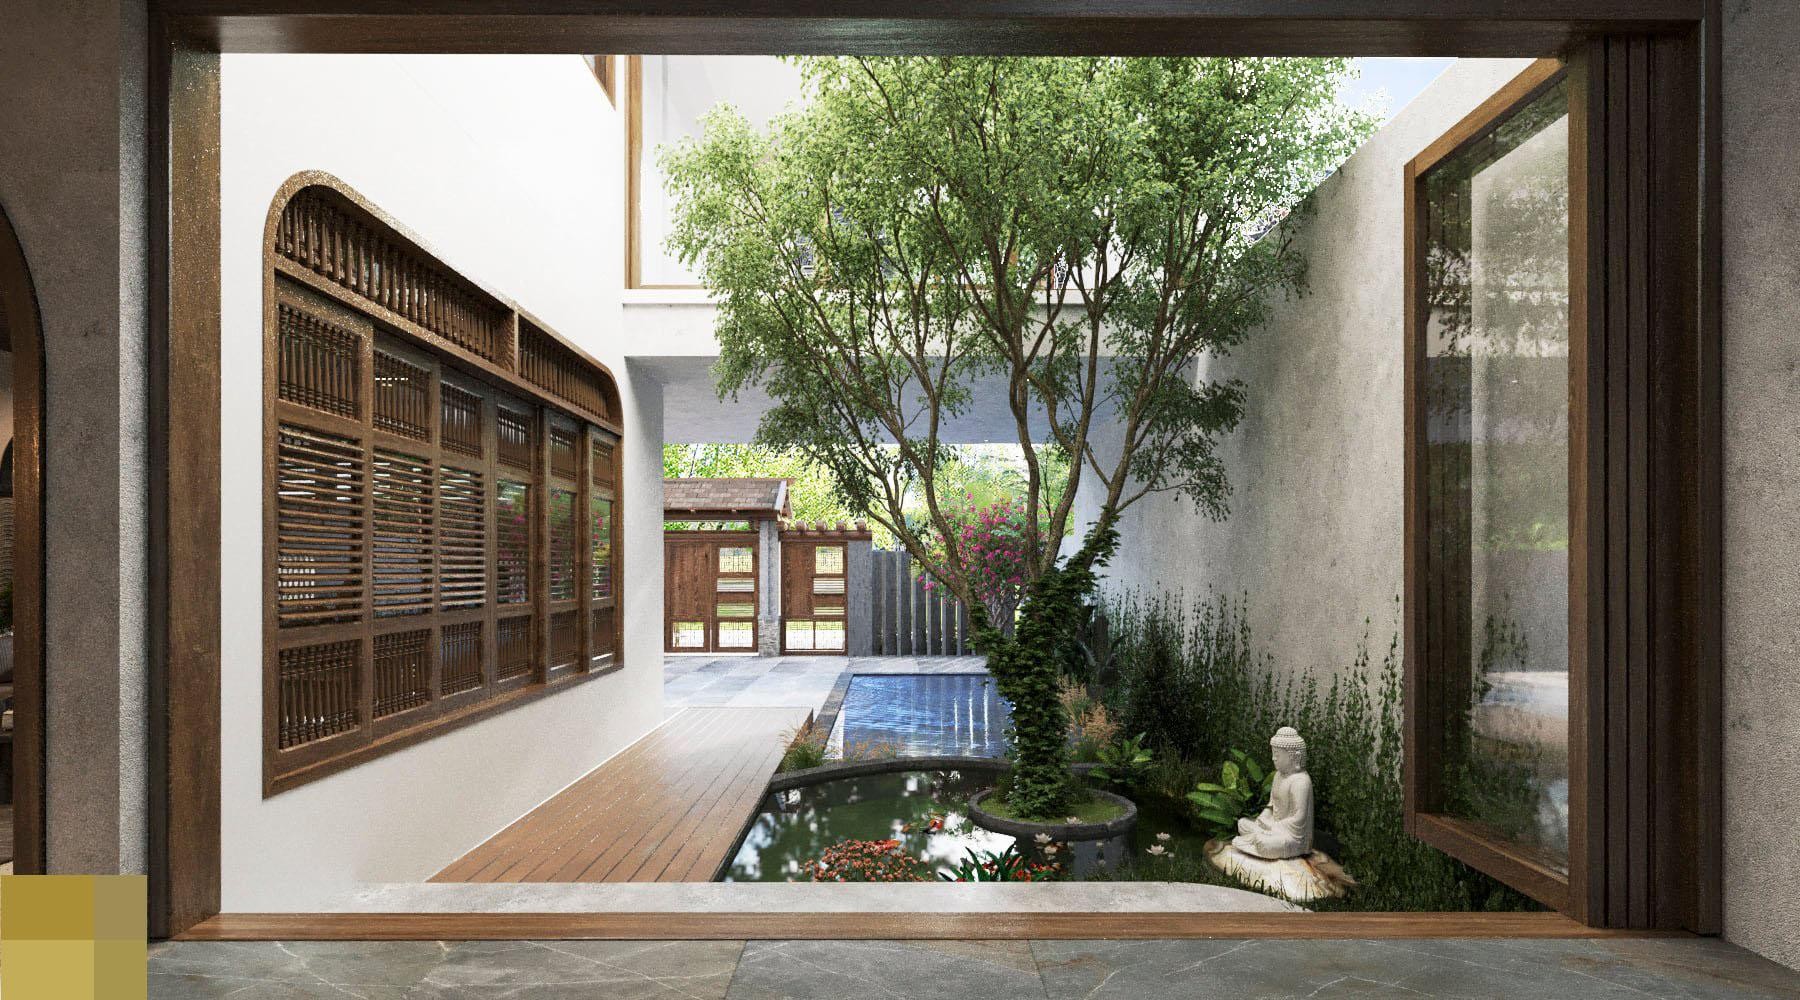 
Bể cá nằm cạnh phòng khách, bên cạnh là tượng Phật ngồi thiền mang cảm giác yên bình
